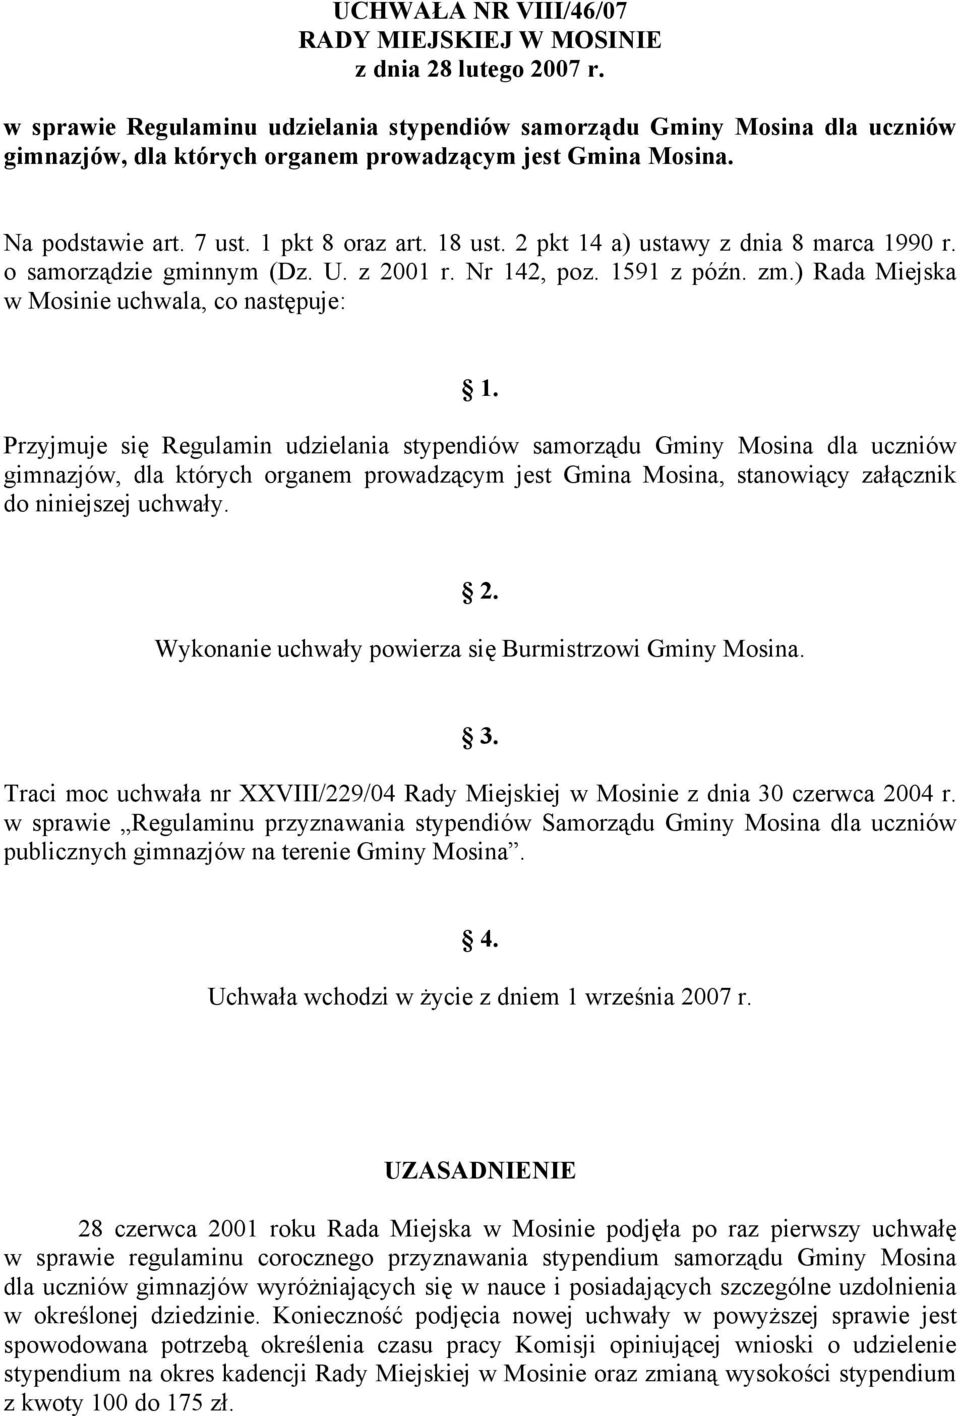 2 pkt 14 a) ustawy z dnia 8 marca 1990 r. o samorządzie gminnym (Dz. U. z 2001 r. Nr 142, poz. 1591 z późn. zm.) Rada Miejska w Mosinie uchwala, co następuje: 1.